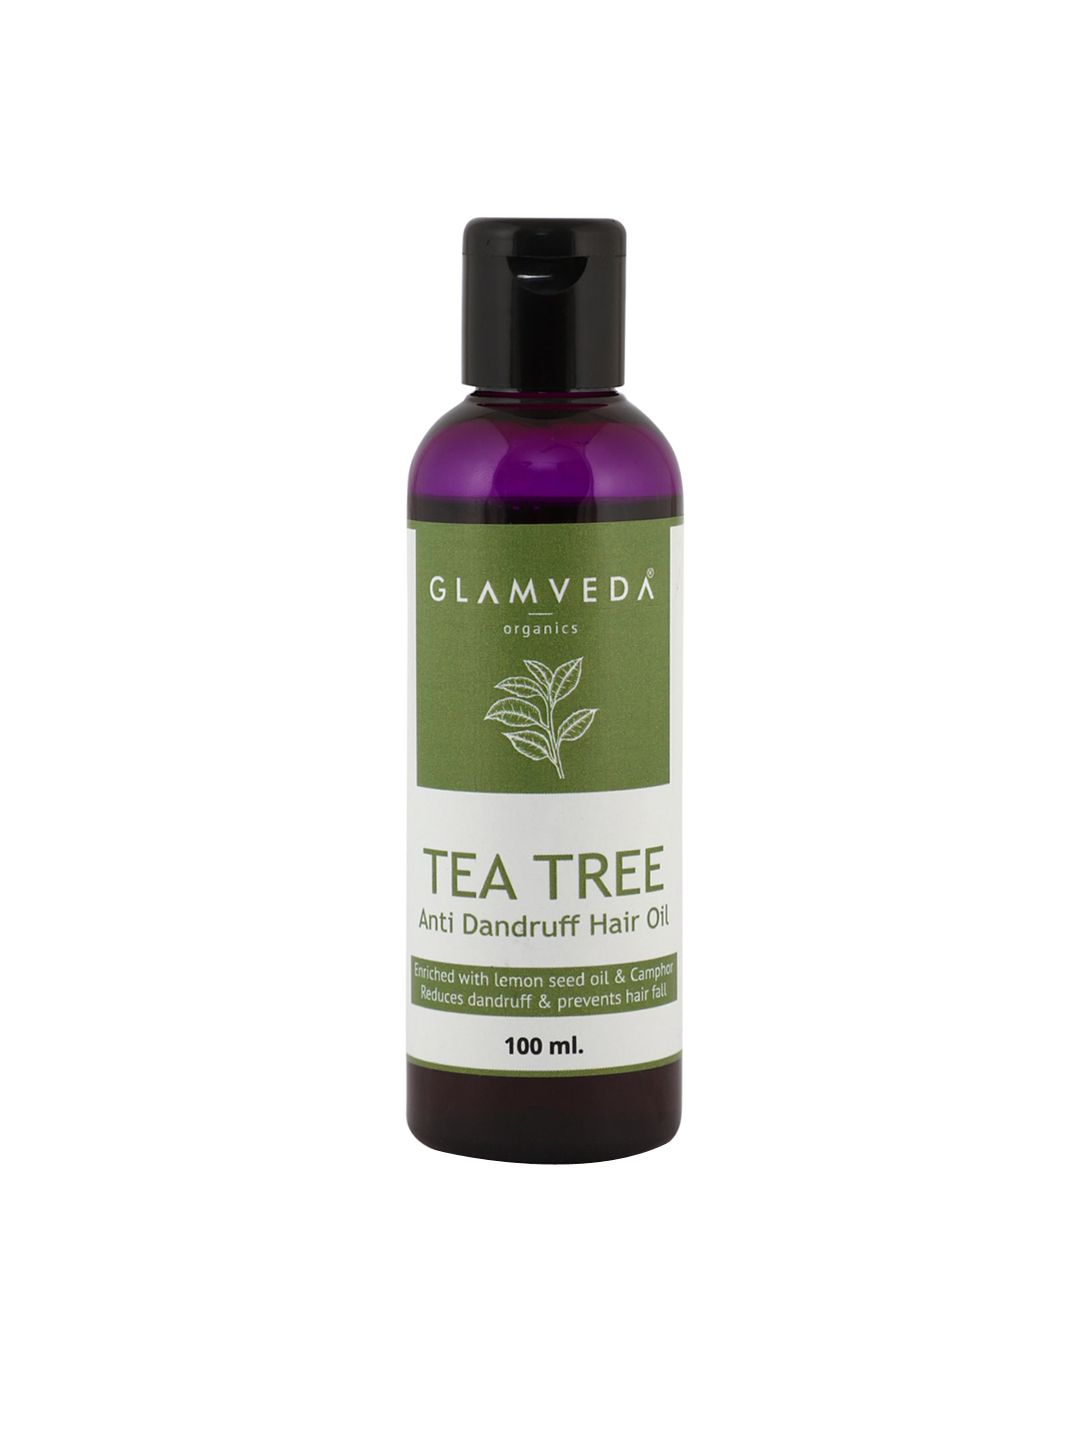 GLAMVEDA Tea Tree Anti Dandruff Hair Oil 100 ml Price in India